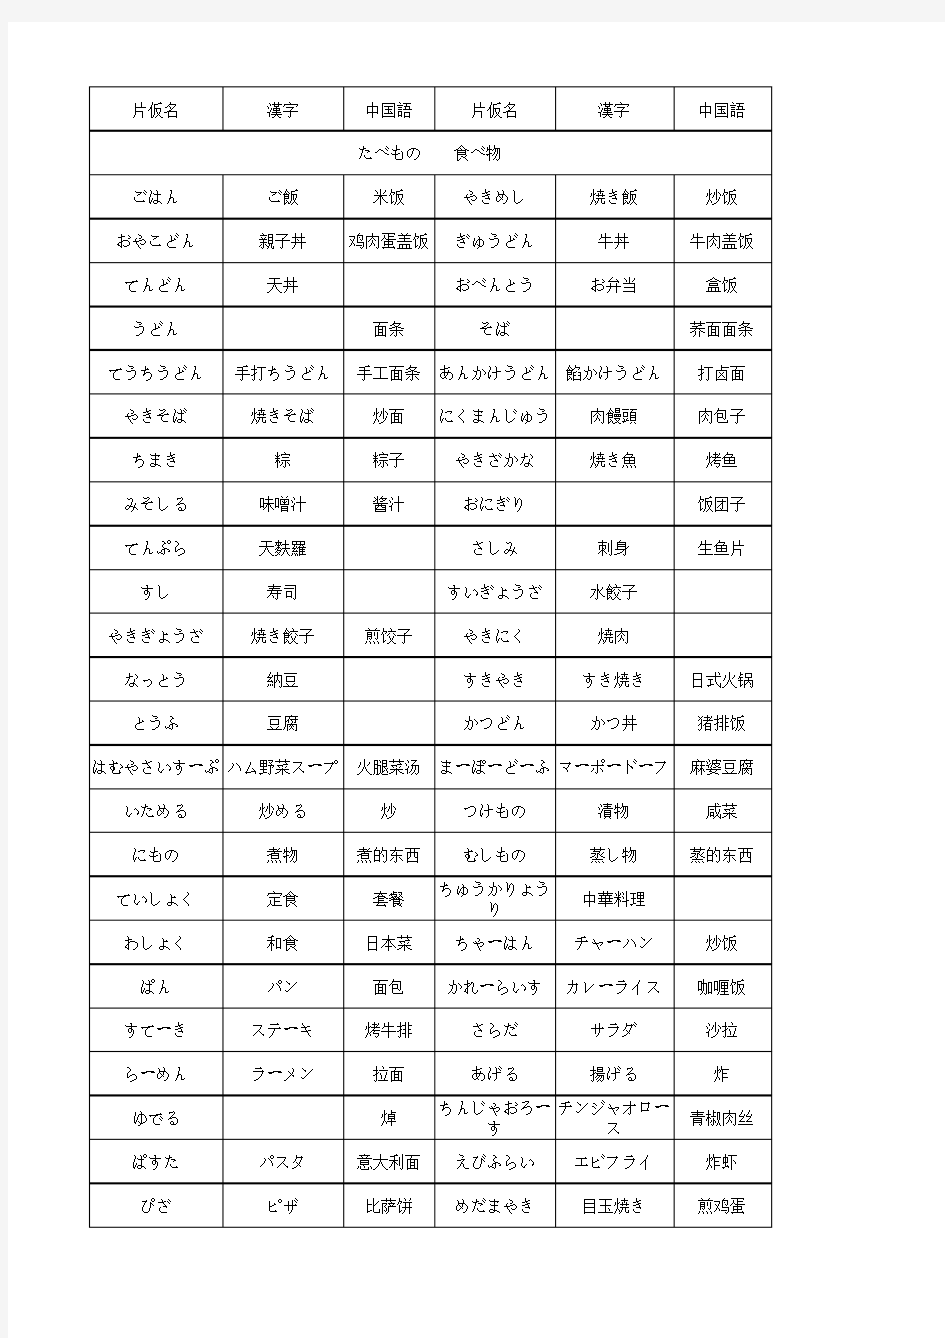 常用的日语单词表